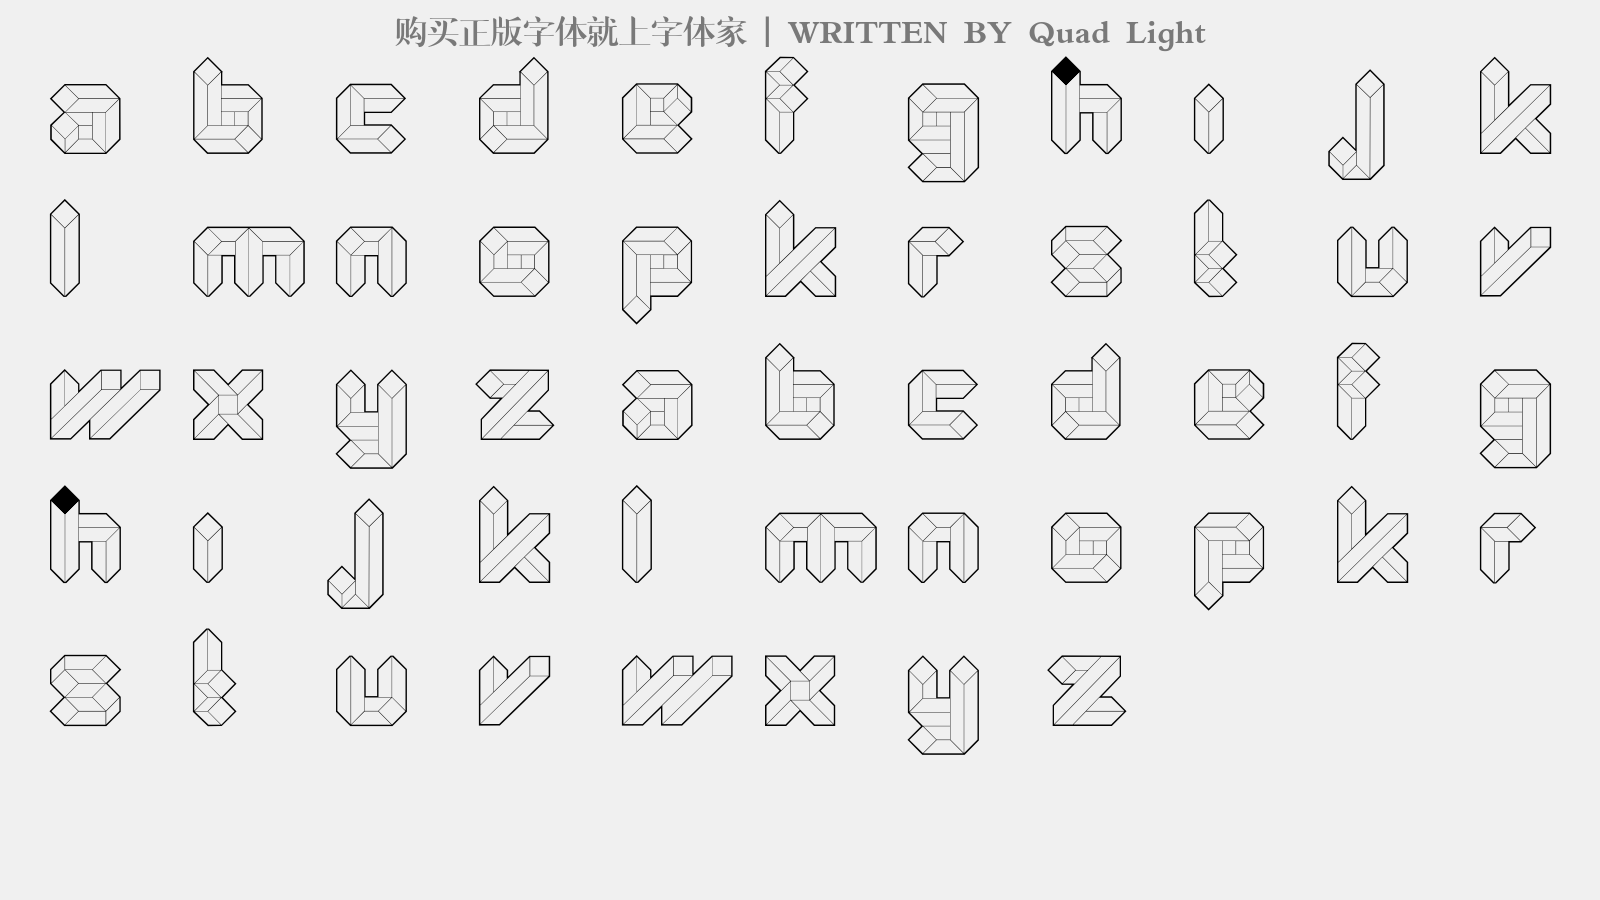 Quad Light - 大写字母/小写字母/数字